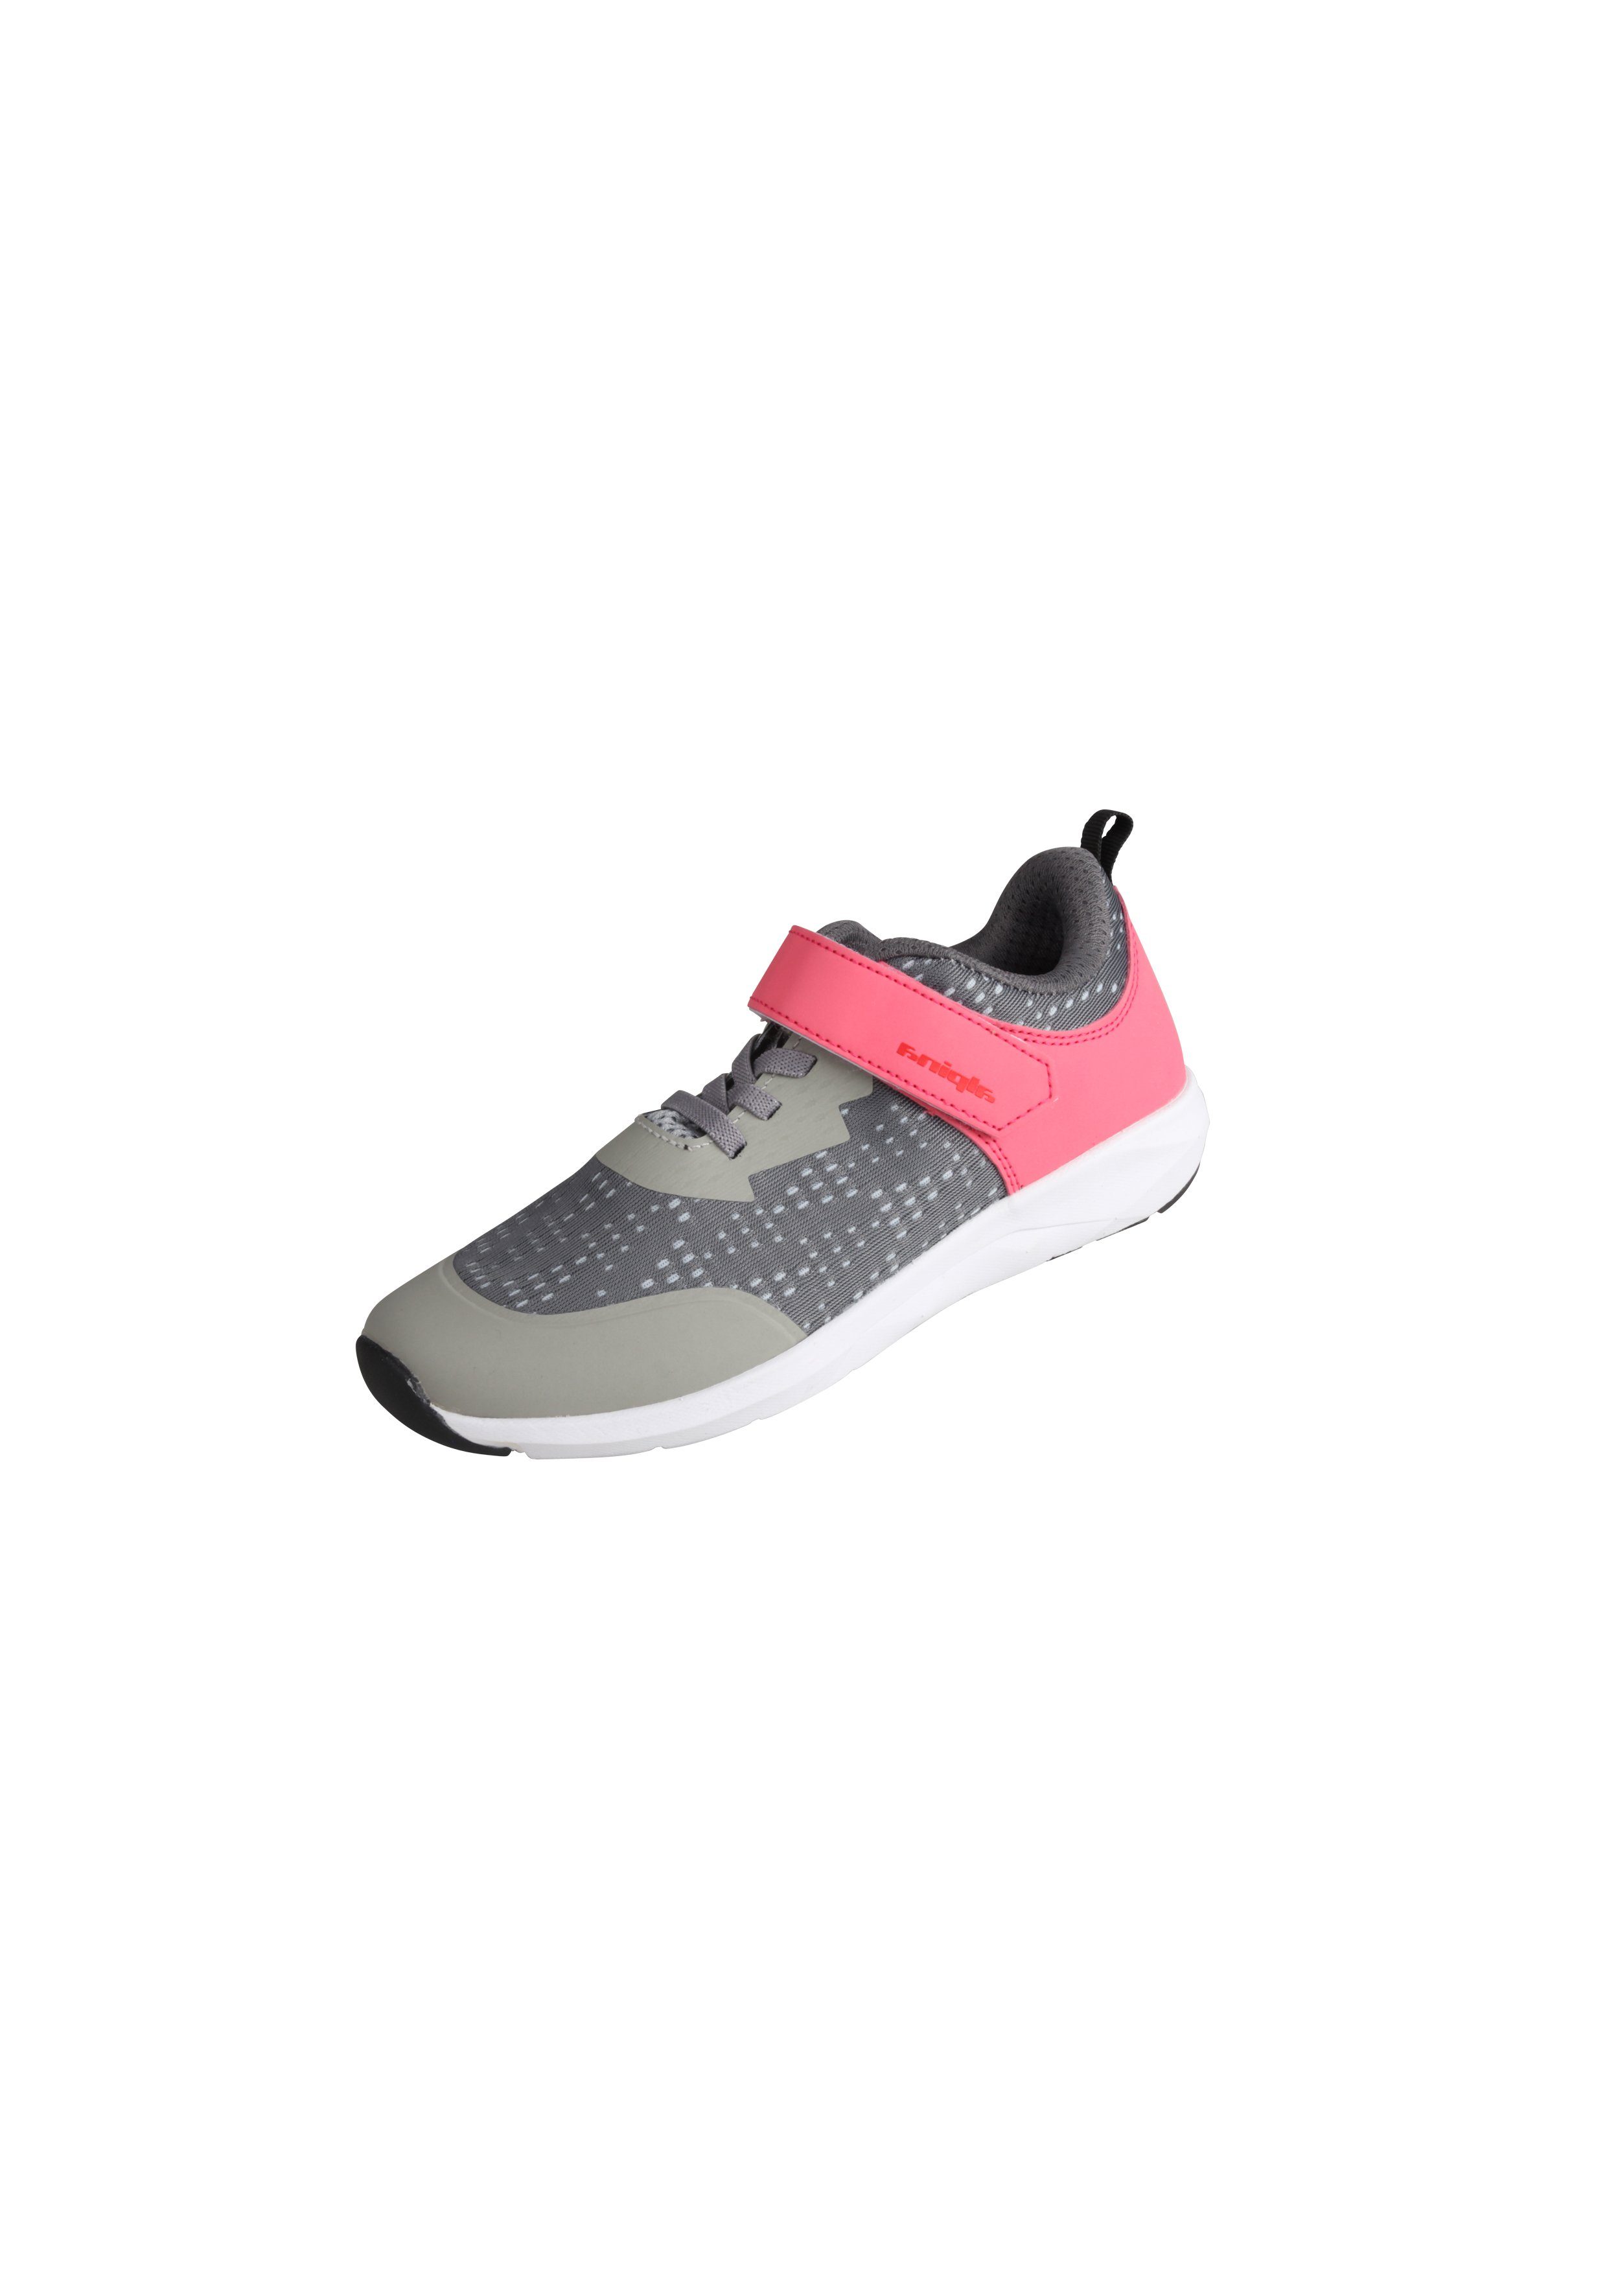 Dies ist eine Liste von Alpina Sports Fun Sneaker mit Ferse grau-pink verstärkter